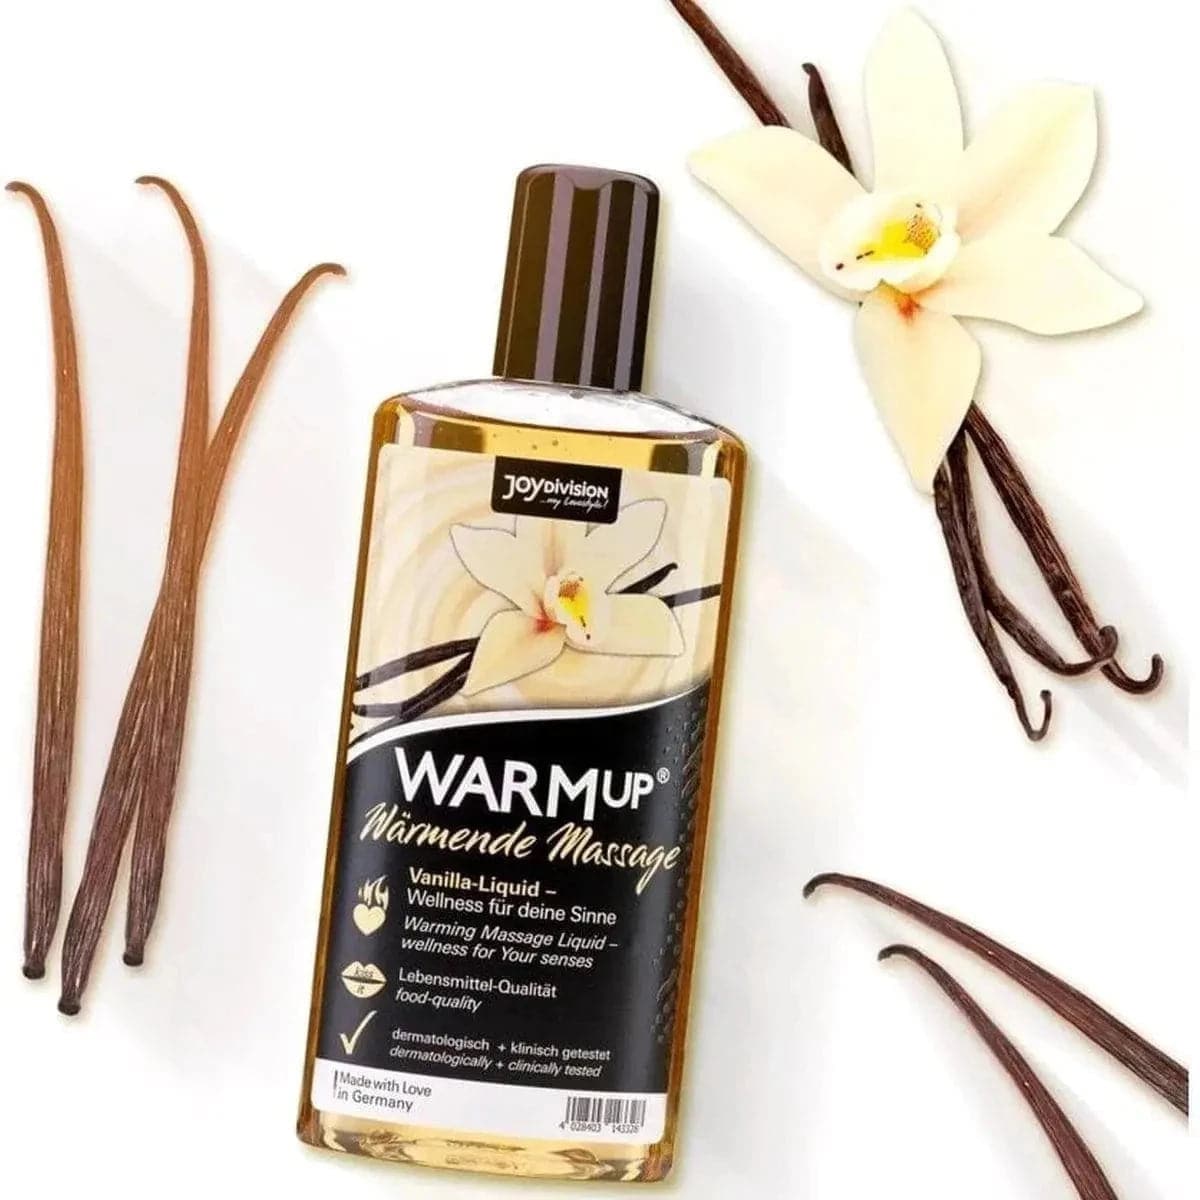 WARMup – Óleo Massagem Comestível Baunilha 150ml - Aquecimento e Aroma de Fruta